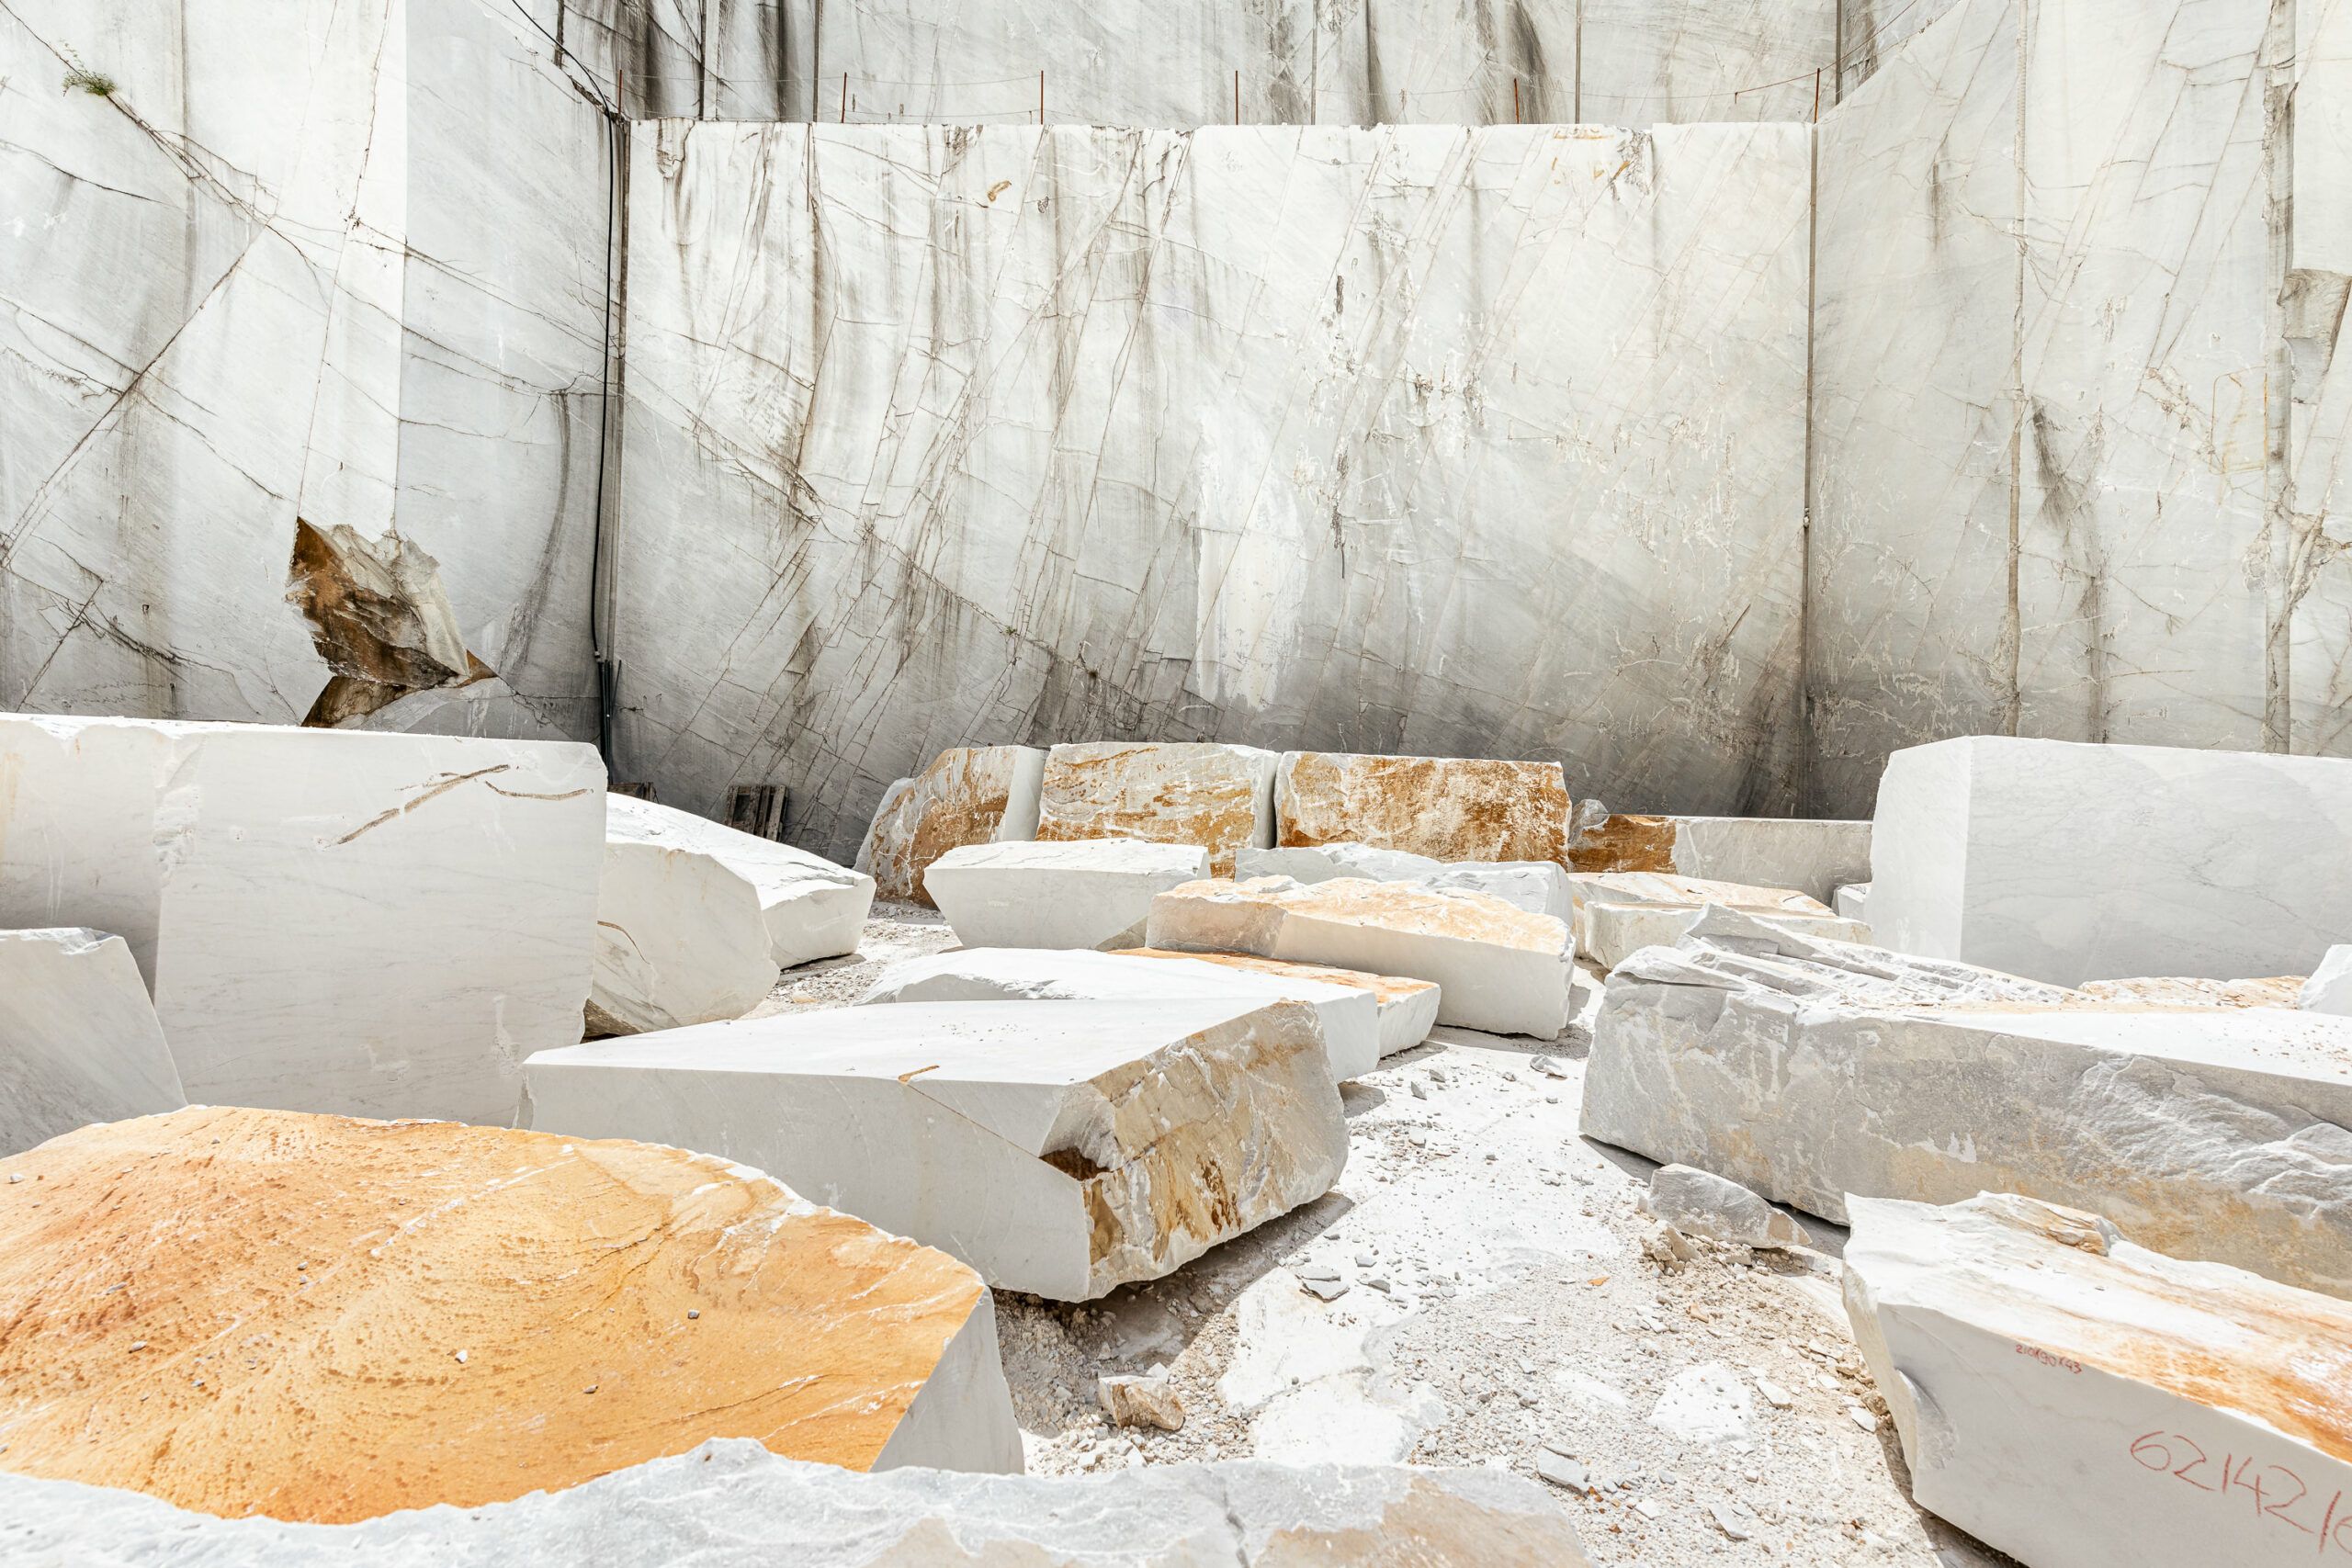 La coerenza nel servizio fotografico, cave di marmo di Carrara, marmo bianco con sfumature gialle, lavorazione del marmo.